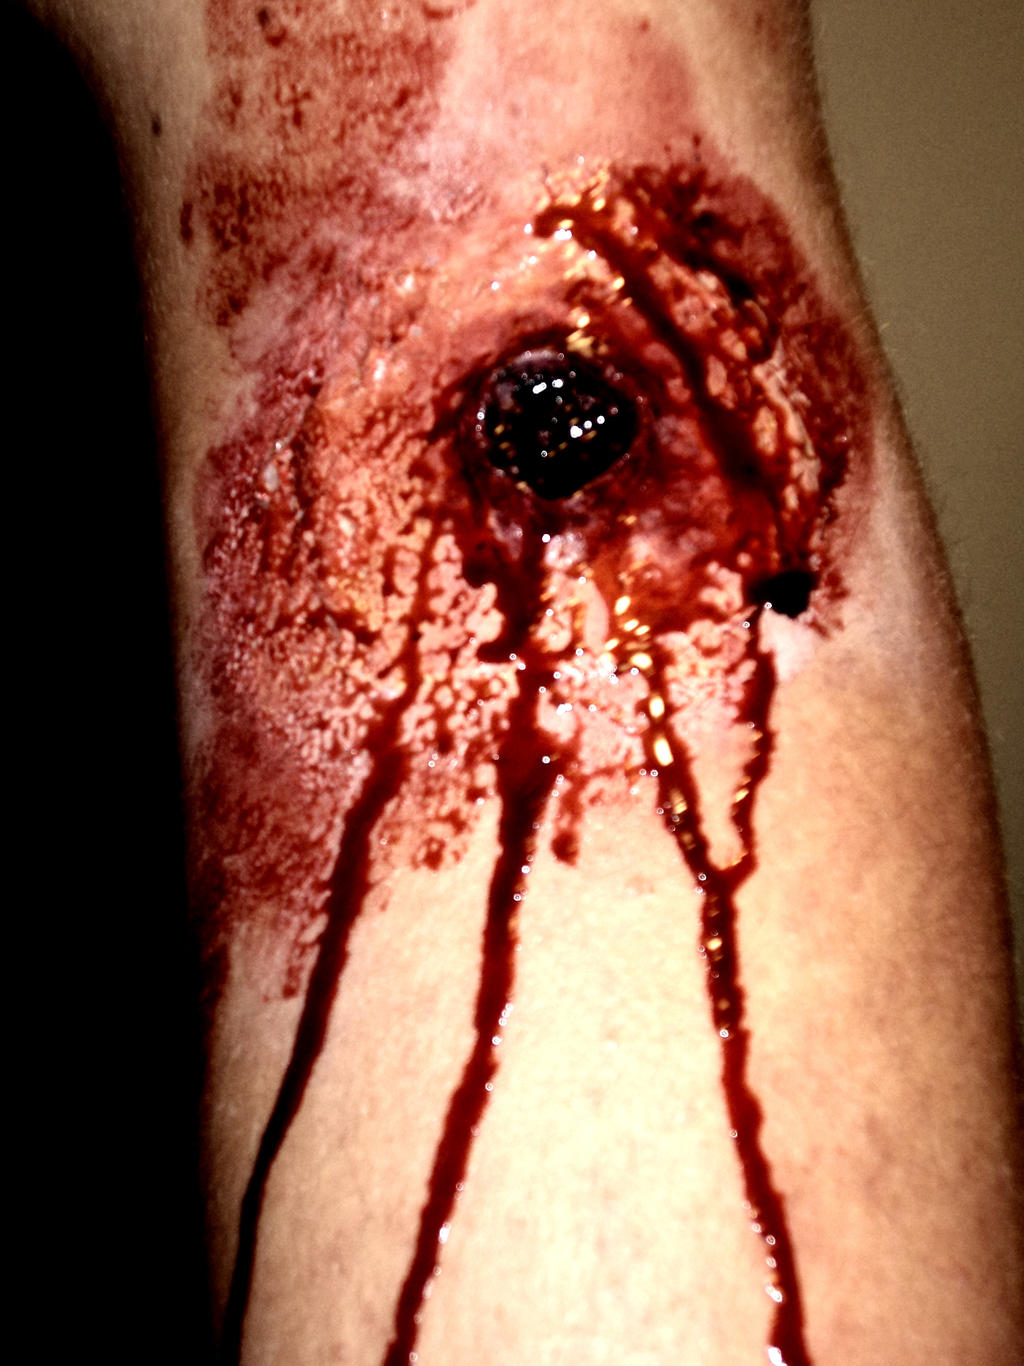 leg wound #11